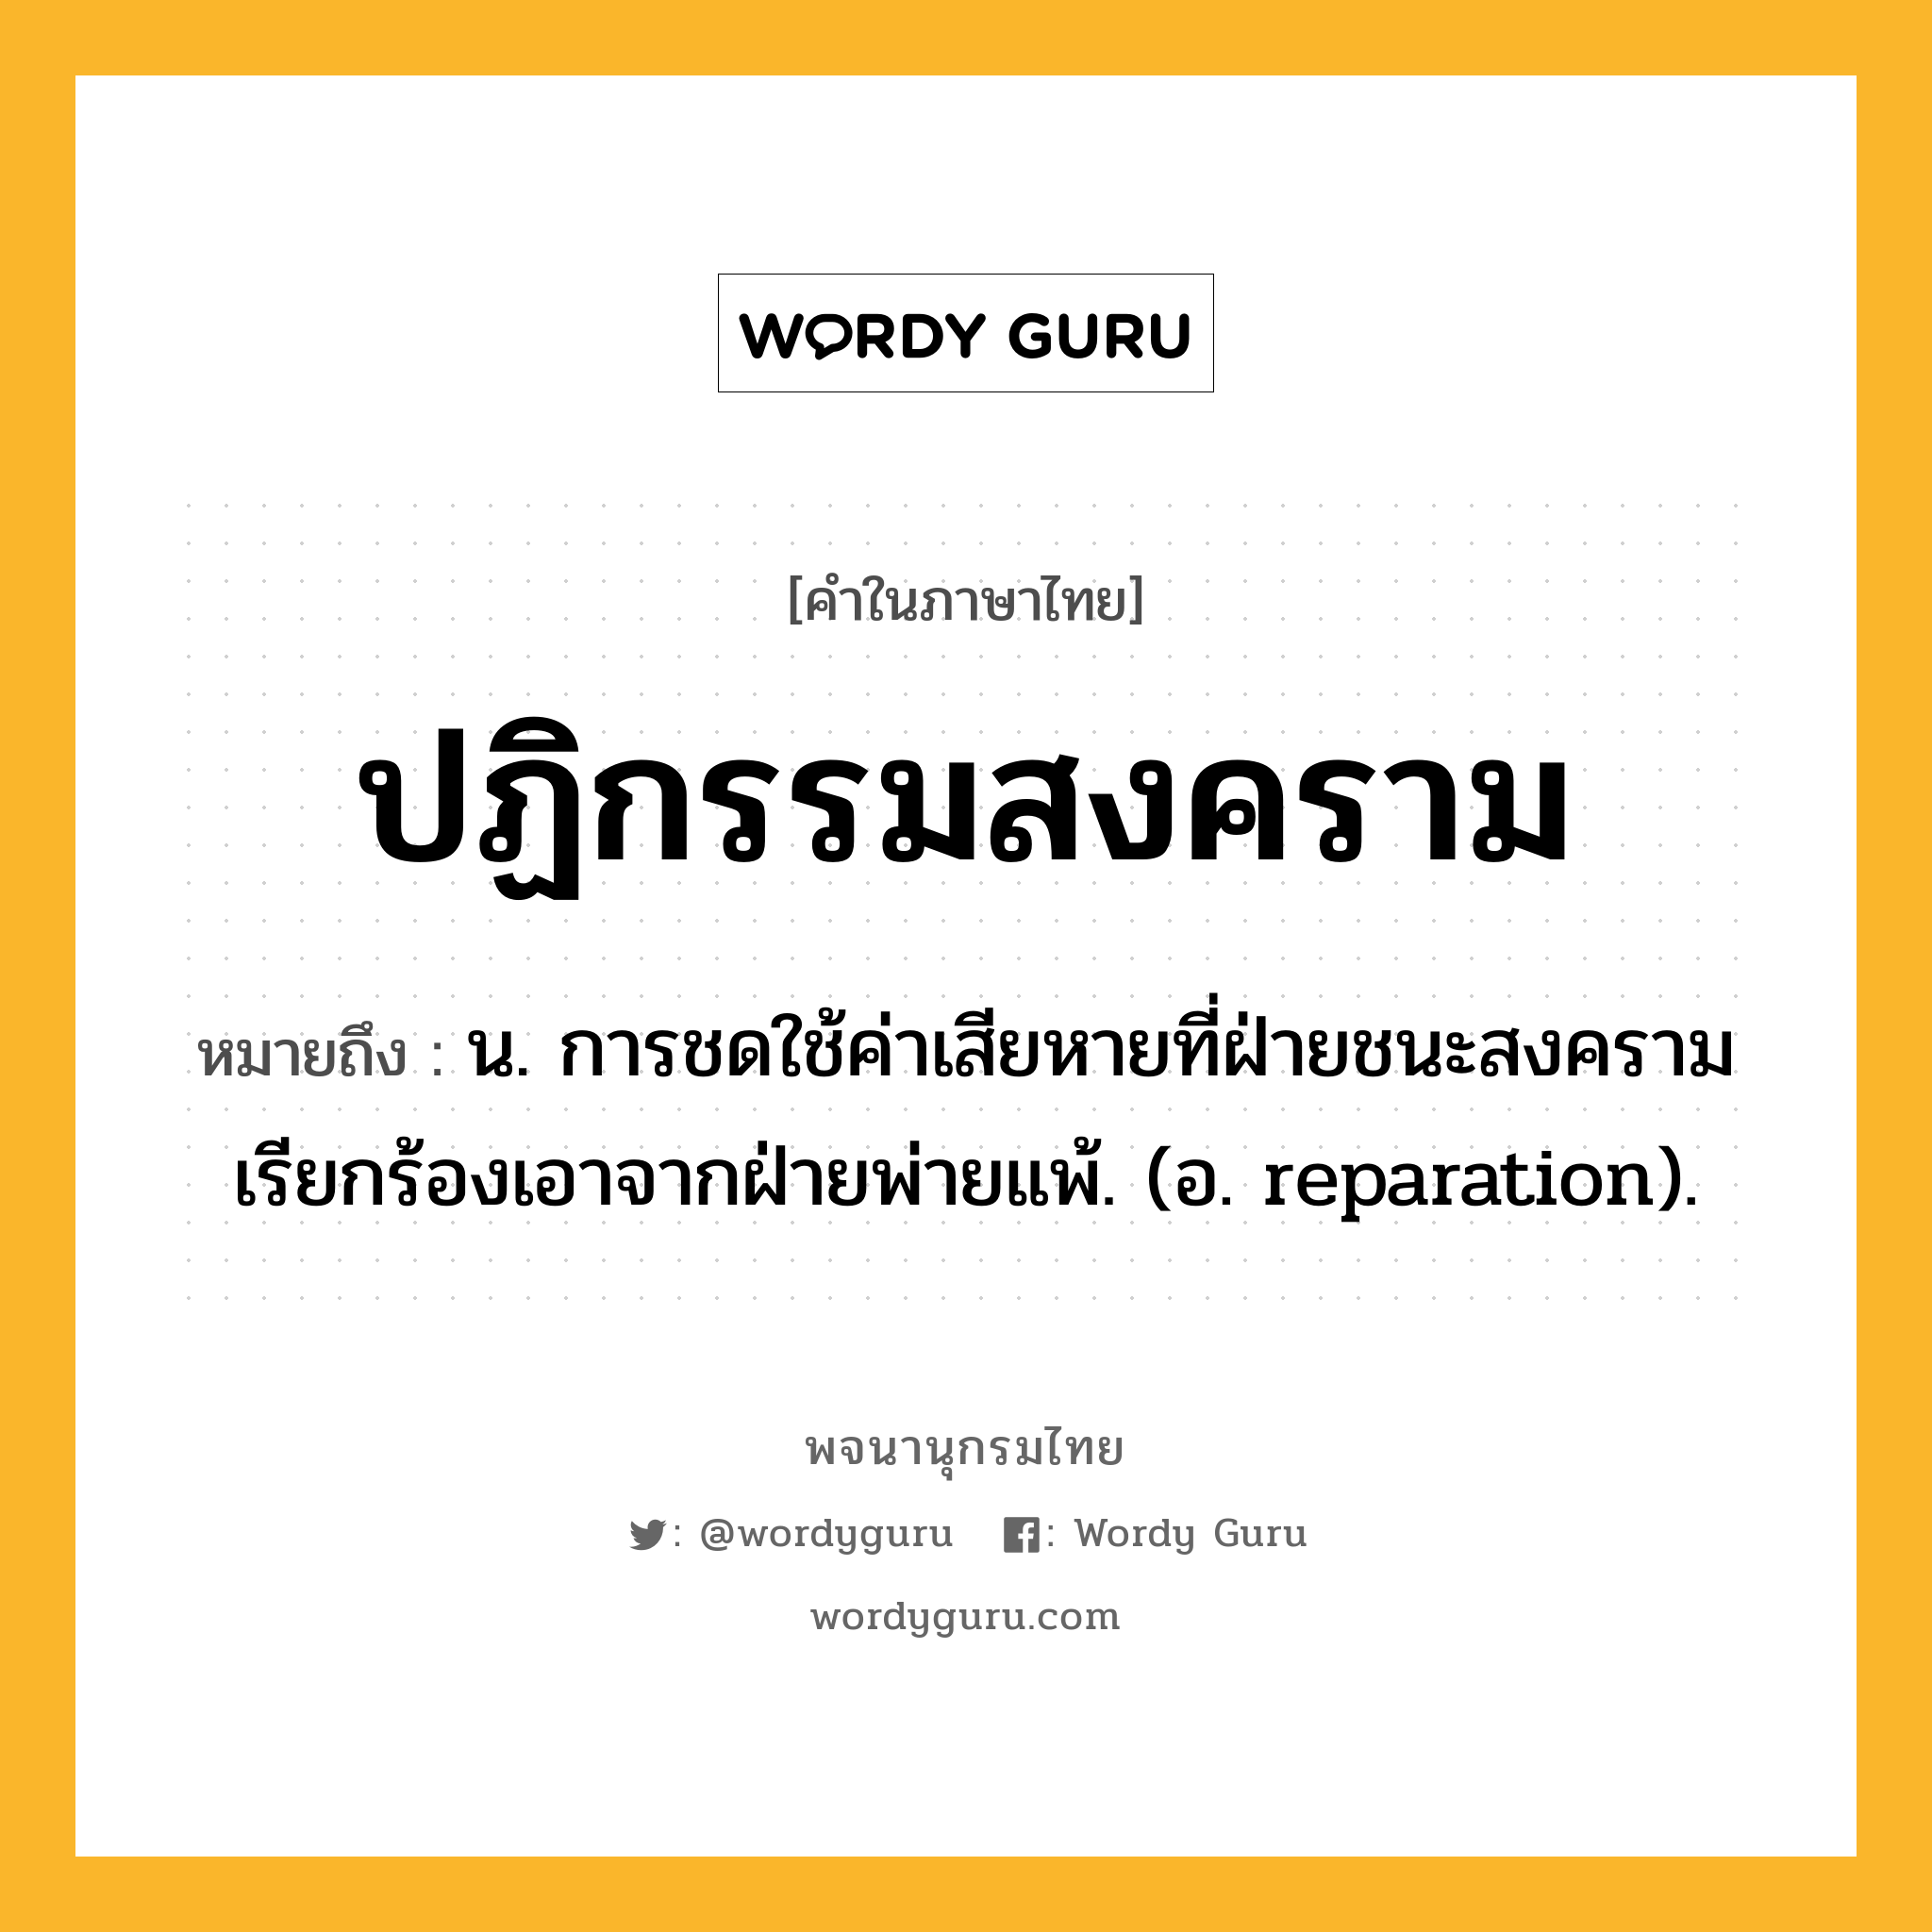 ปฏิกรรมสงคราม ความหมาย หมายถึงอะไร?, คำในภาษาไทย ปฏิกรรมสงคราม หมายถึง น. การชดใช้ค่าเสียหายที่ฝ่ายชนะสงครามเรียกร้องเอาจากฝ่ายพ่ายแพ้. (อ. reparation).